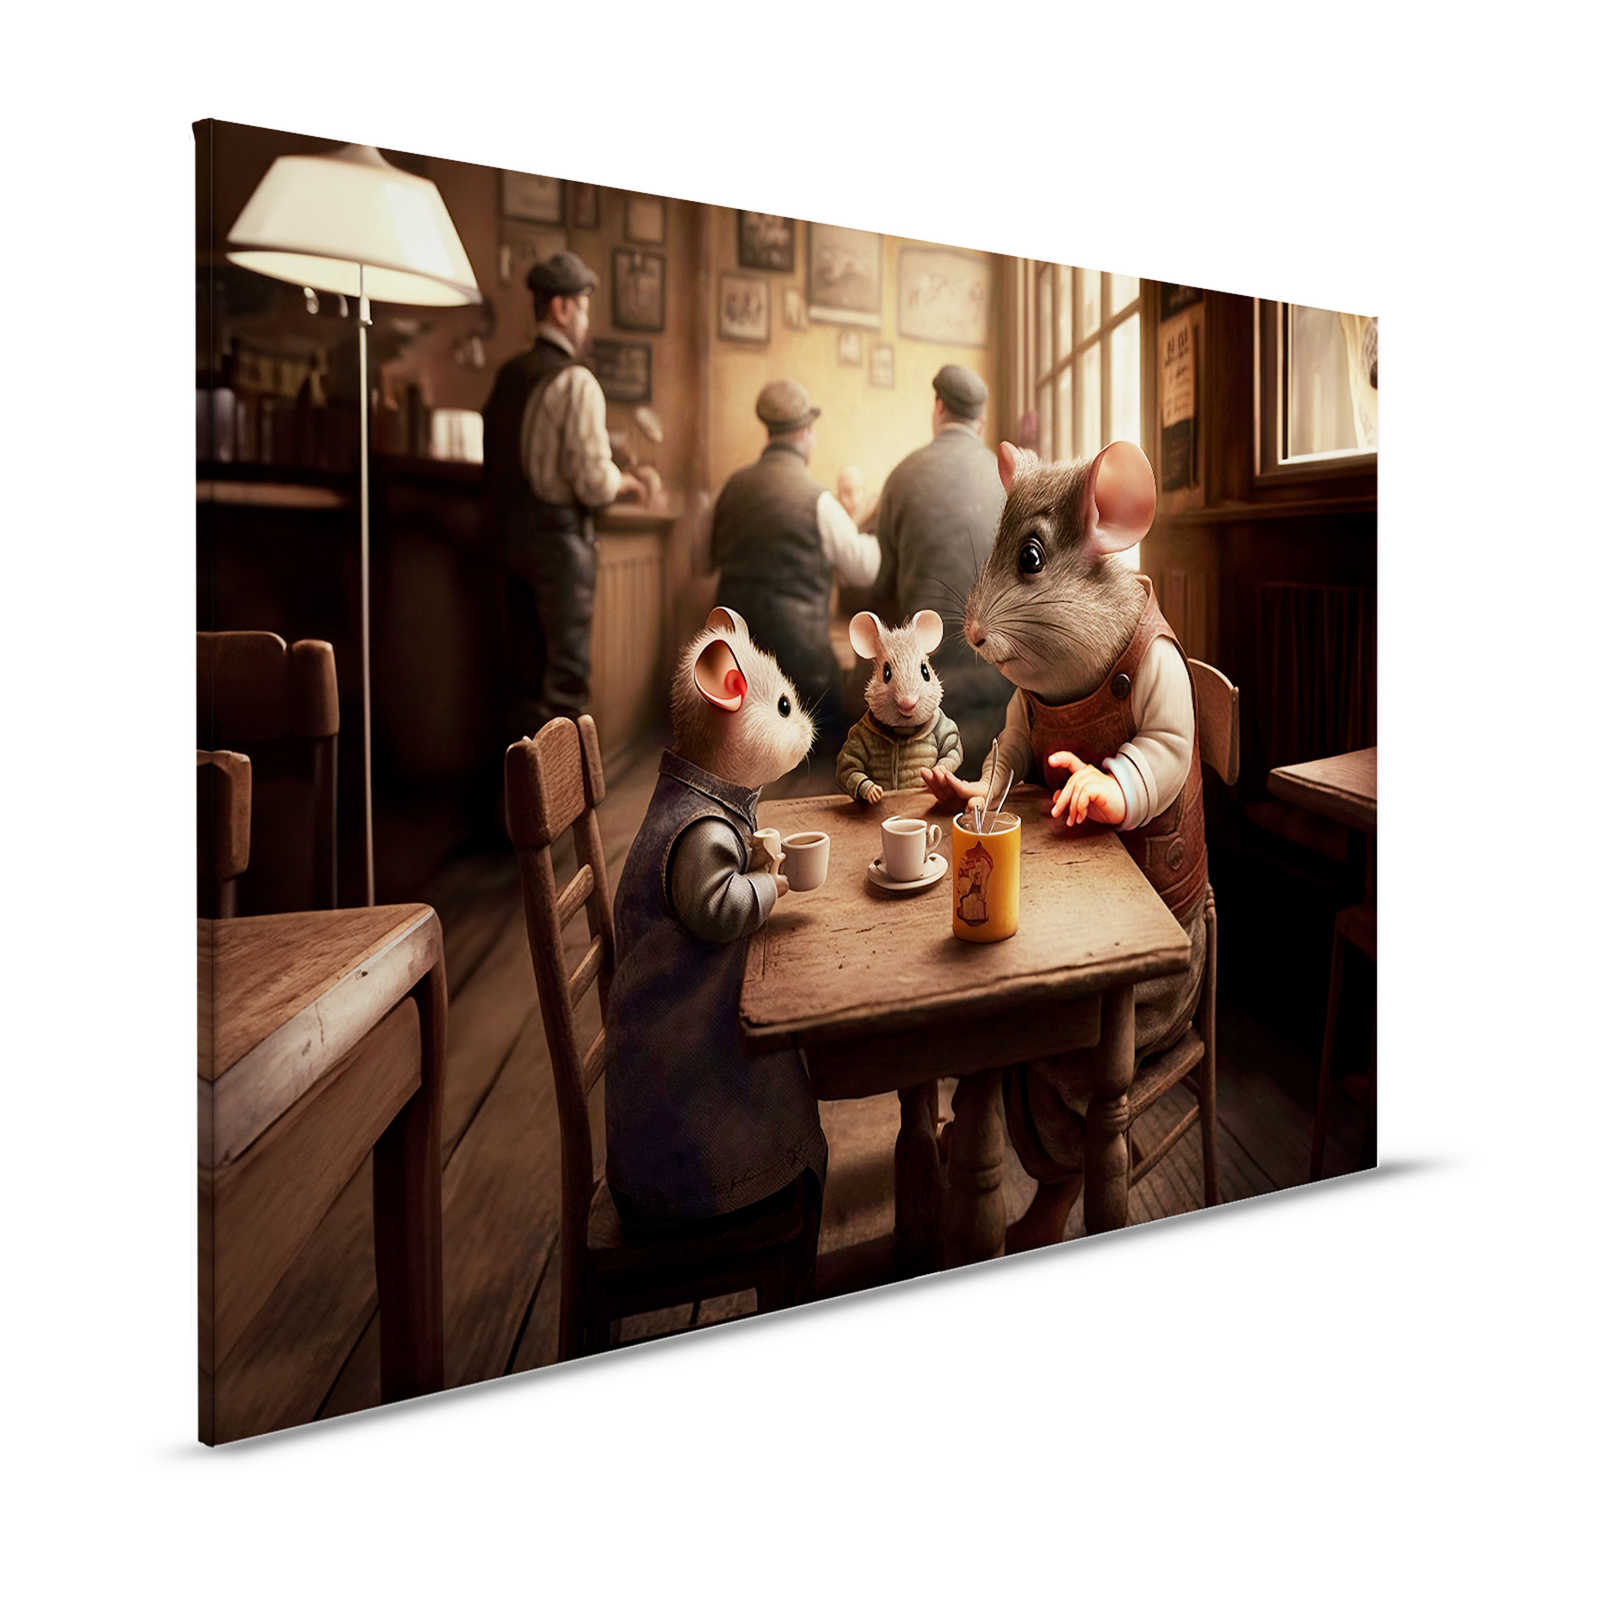 KI Cuadro »Café au Mouse« - 120 cm x 80 cm
